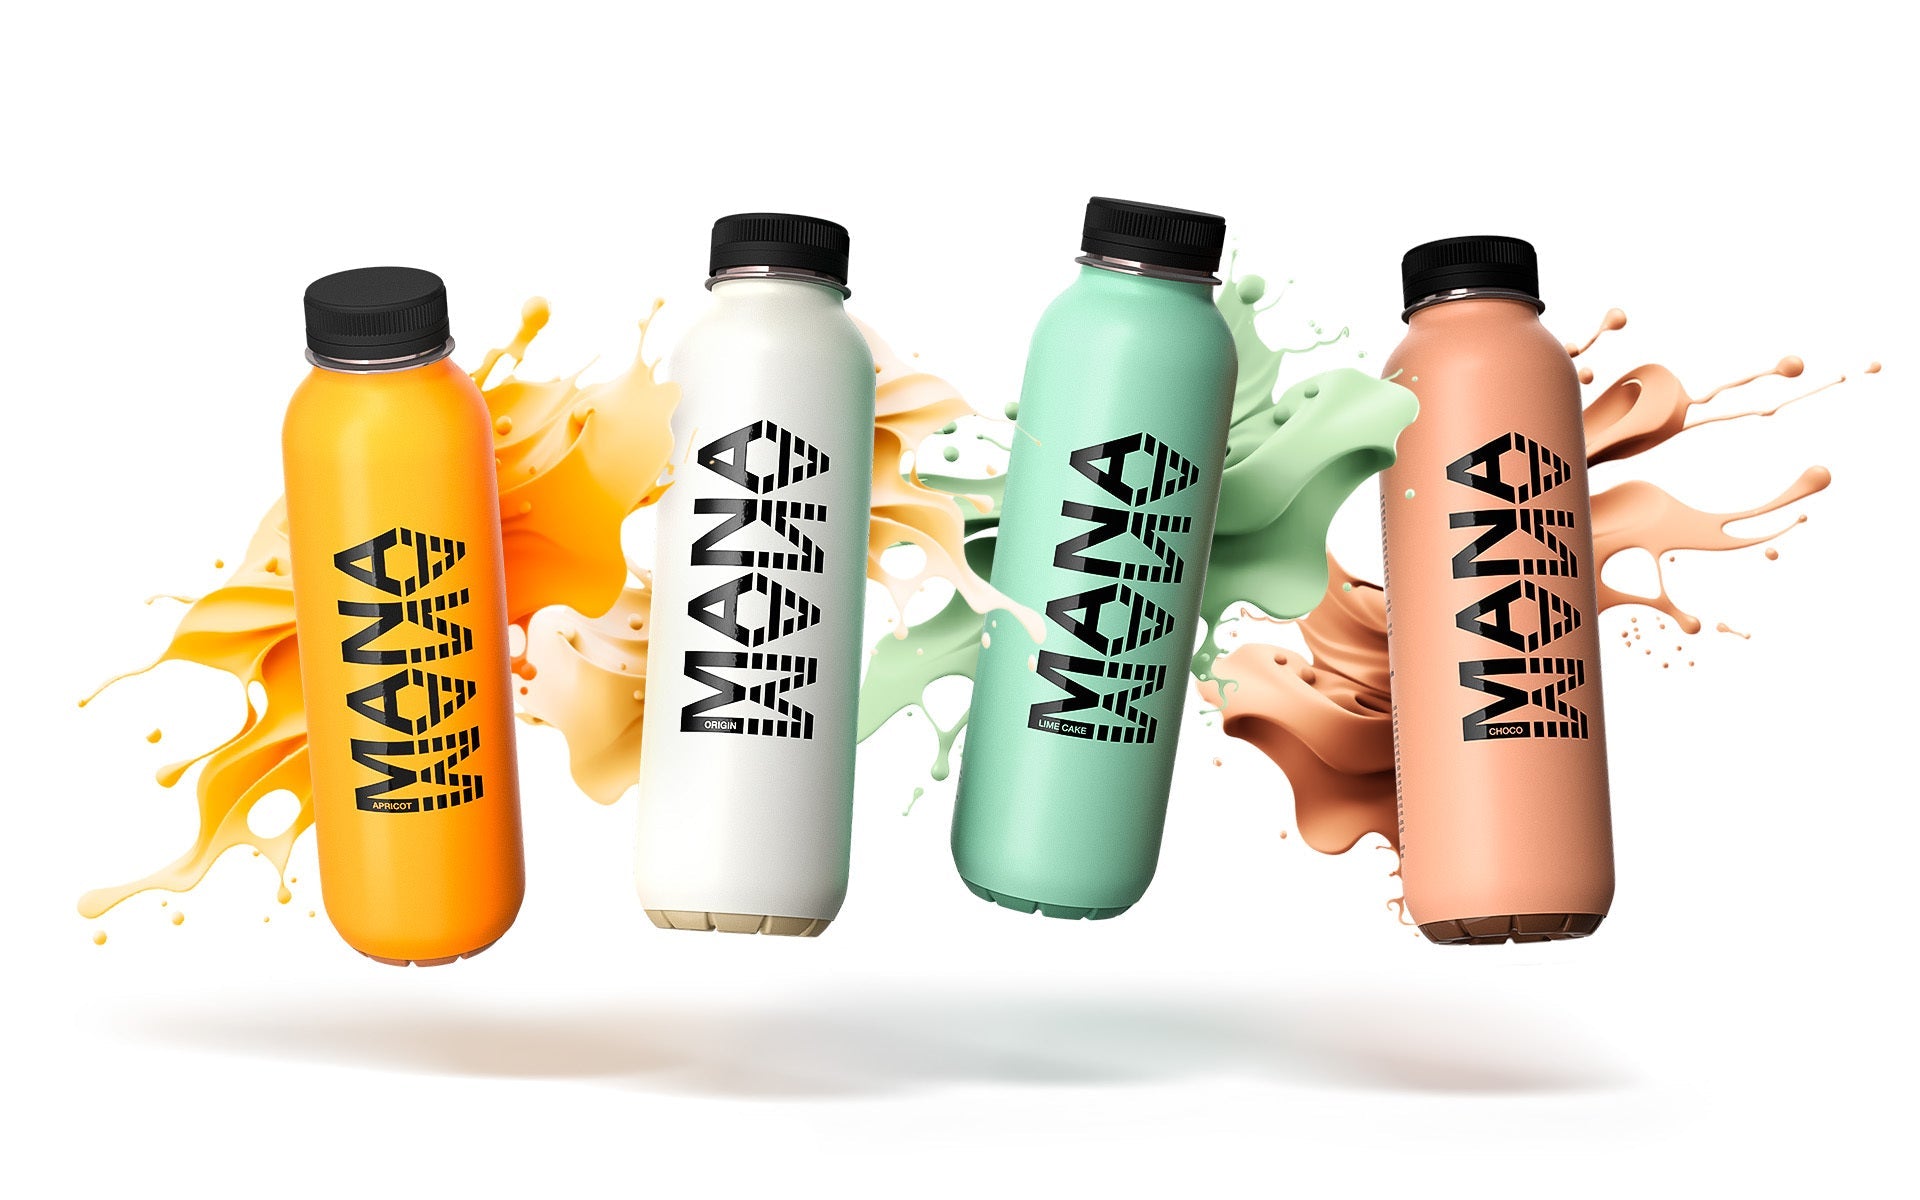 Mana stellt den neuen Drink Mark 8 vor - kraftvoller, leckerer und nachhaltiger als je zuvor